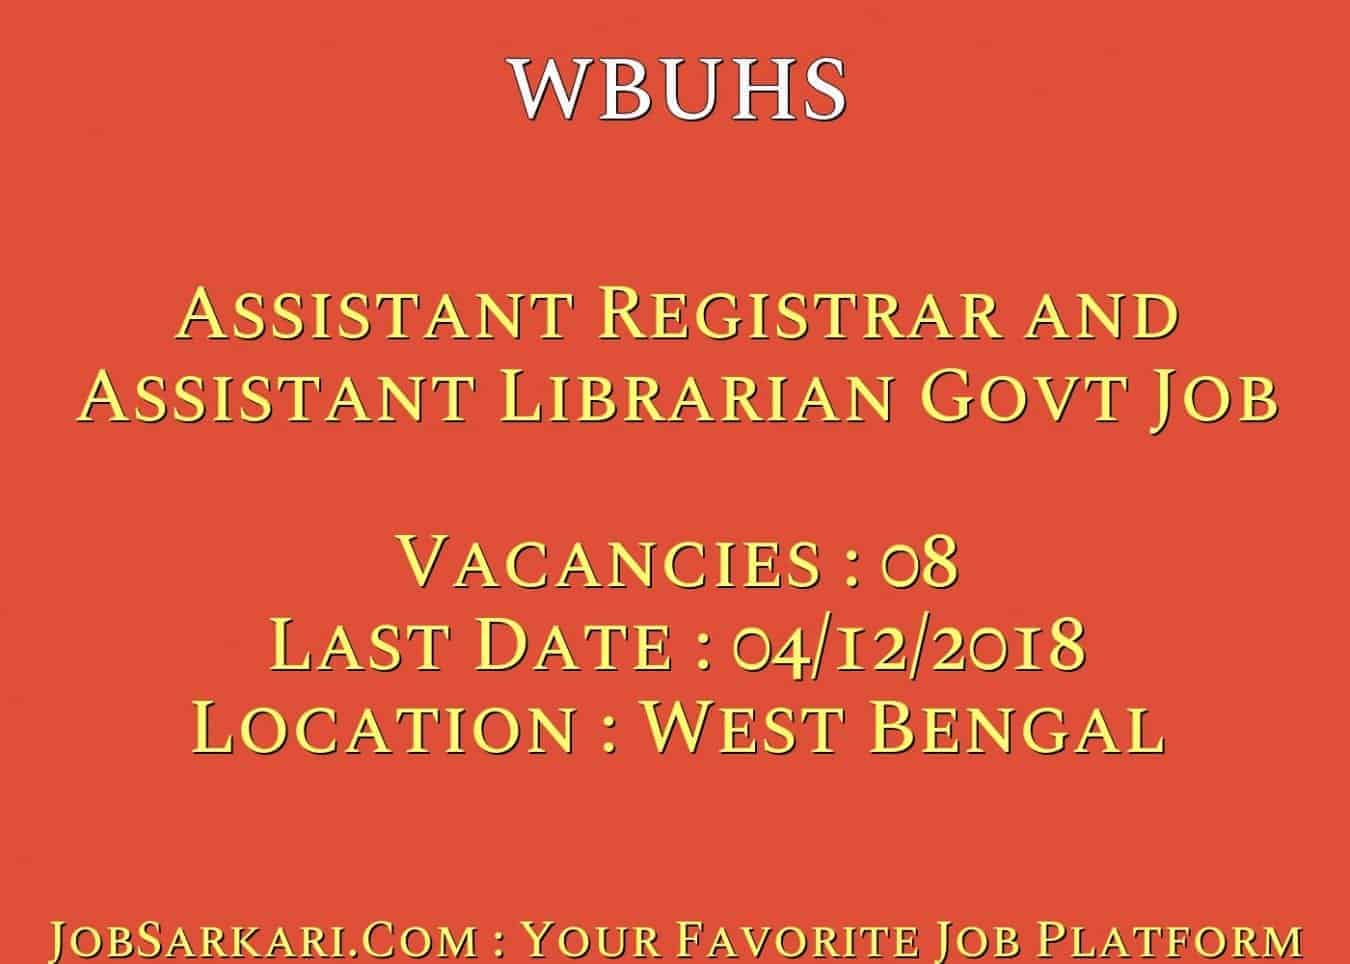 WBUHS Recruitment 2018 for Assistant Registrar and Assistant Librarian Govt Job